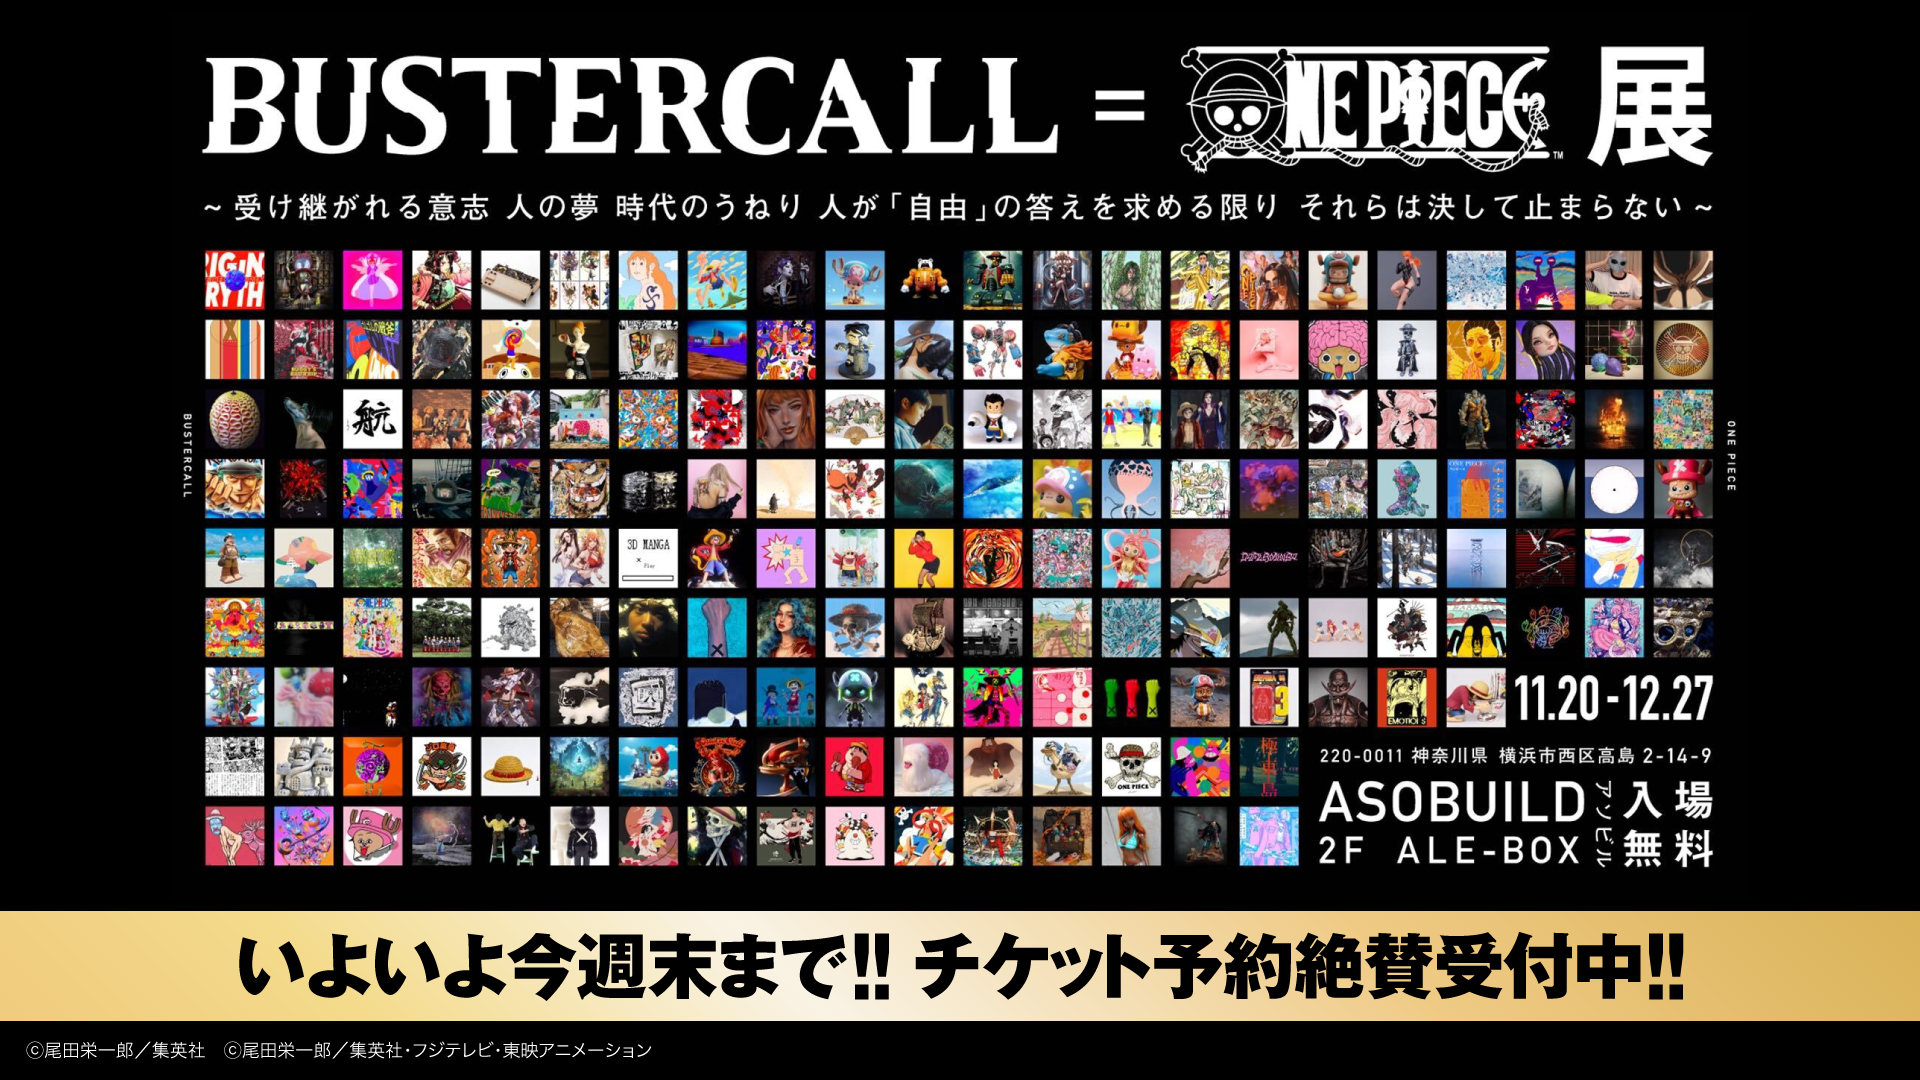 Bustercall One Piece展 12月27日 日 まで横浜アソビルにて開催 いよいよ今週まで チケット予約絶賛受付中 Bustercall 運営事務局のプレスリリース